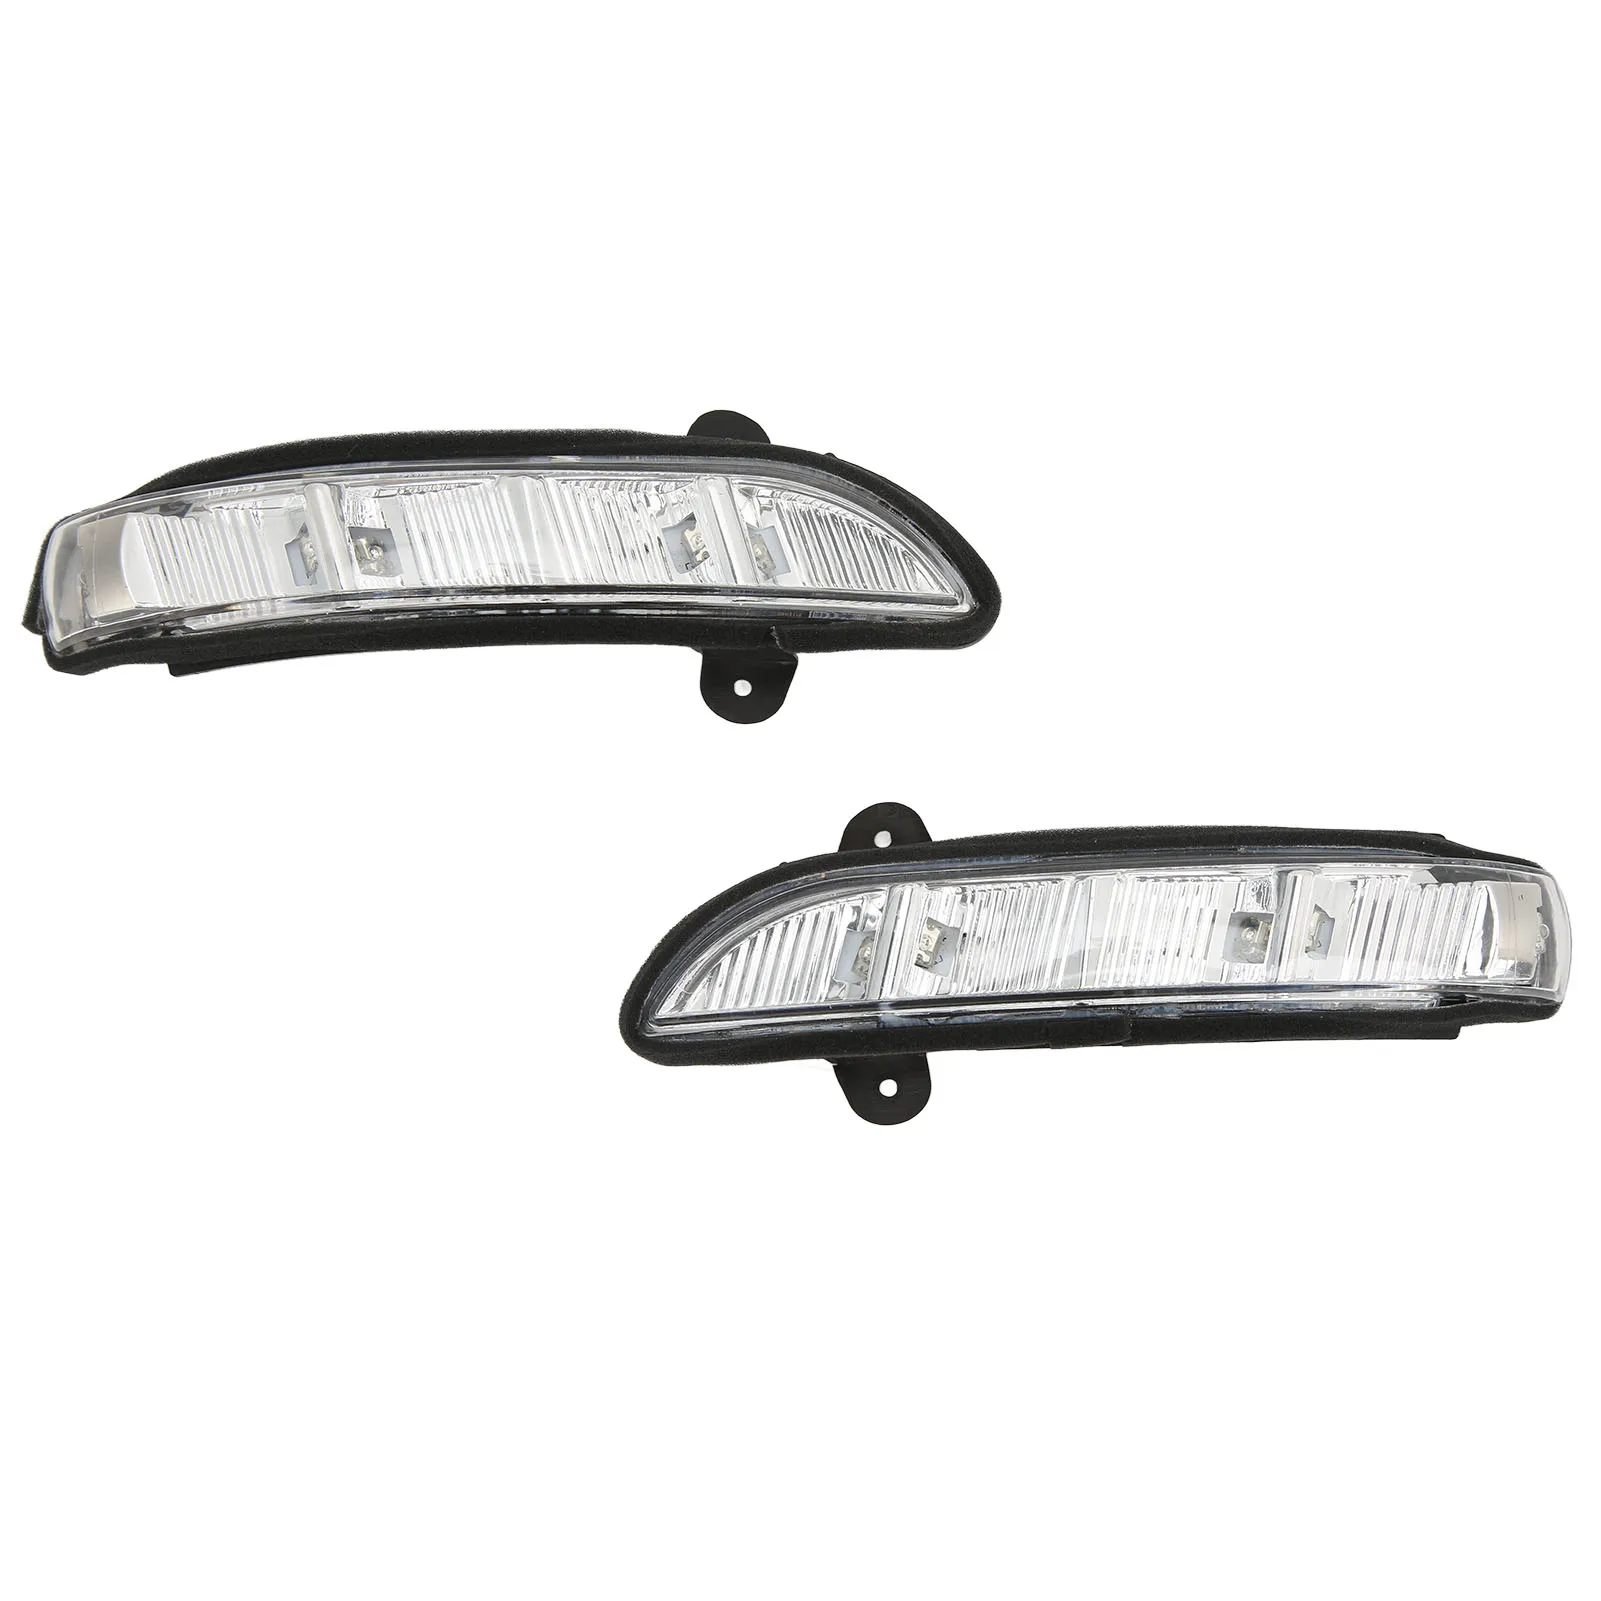 Габаритный фонарь 2198200521 Сигнальная лампа для зеркала заднего вида, Износостойкий A2198200621, левый и правый, прочный, простая установка для автомобиля 1